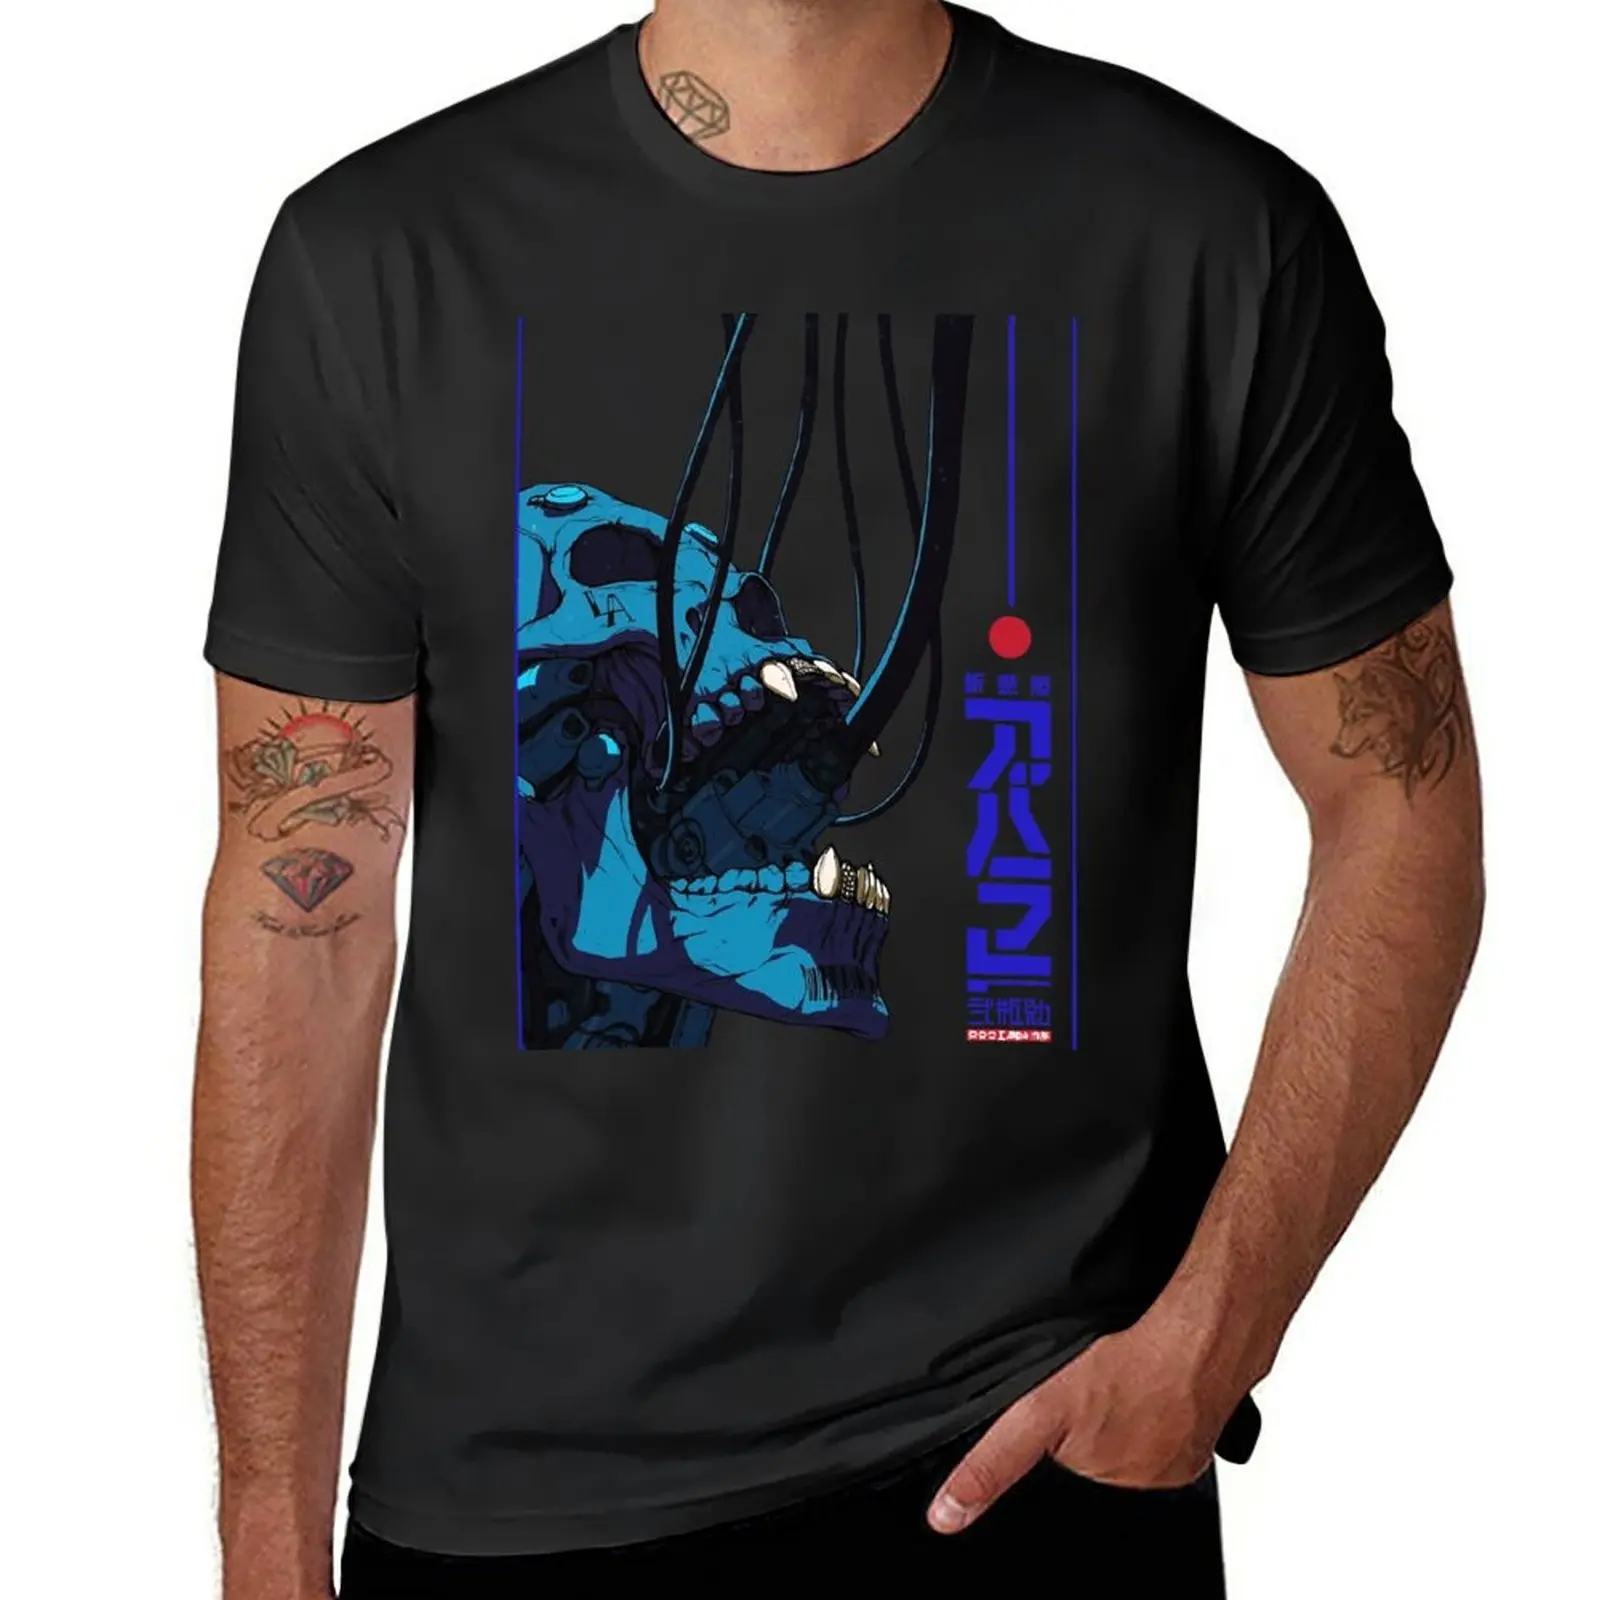 Футболка с черепом в стиле киберпанк Cyborg Vaporwave в городском стиле, мужские спортивные рубашки, обычная футболка, мужские графические футболки, комплект